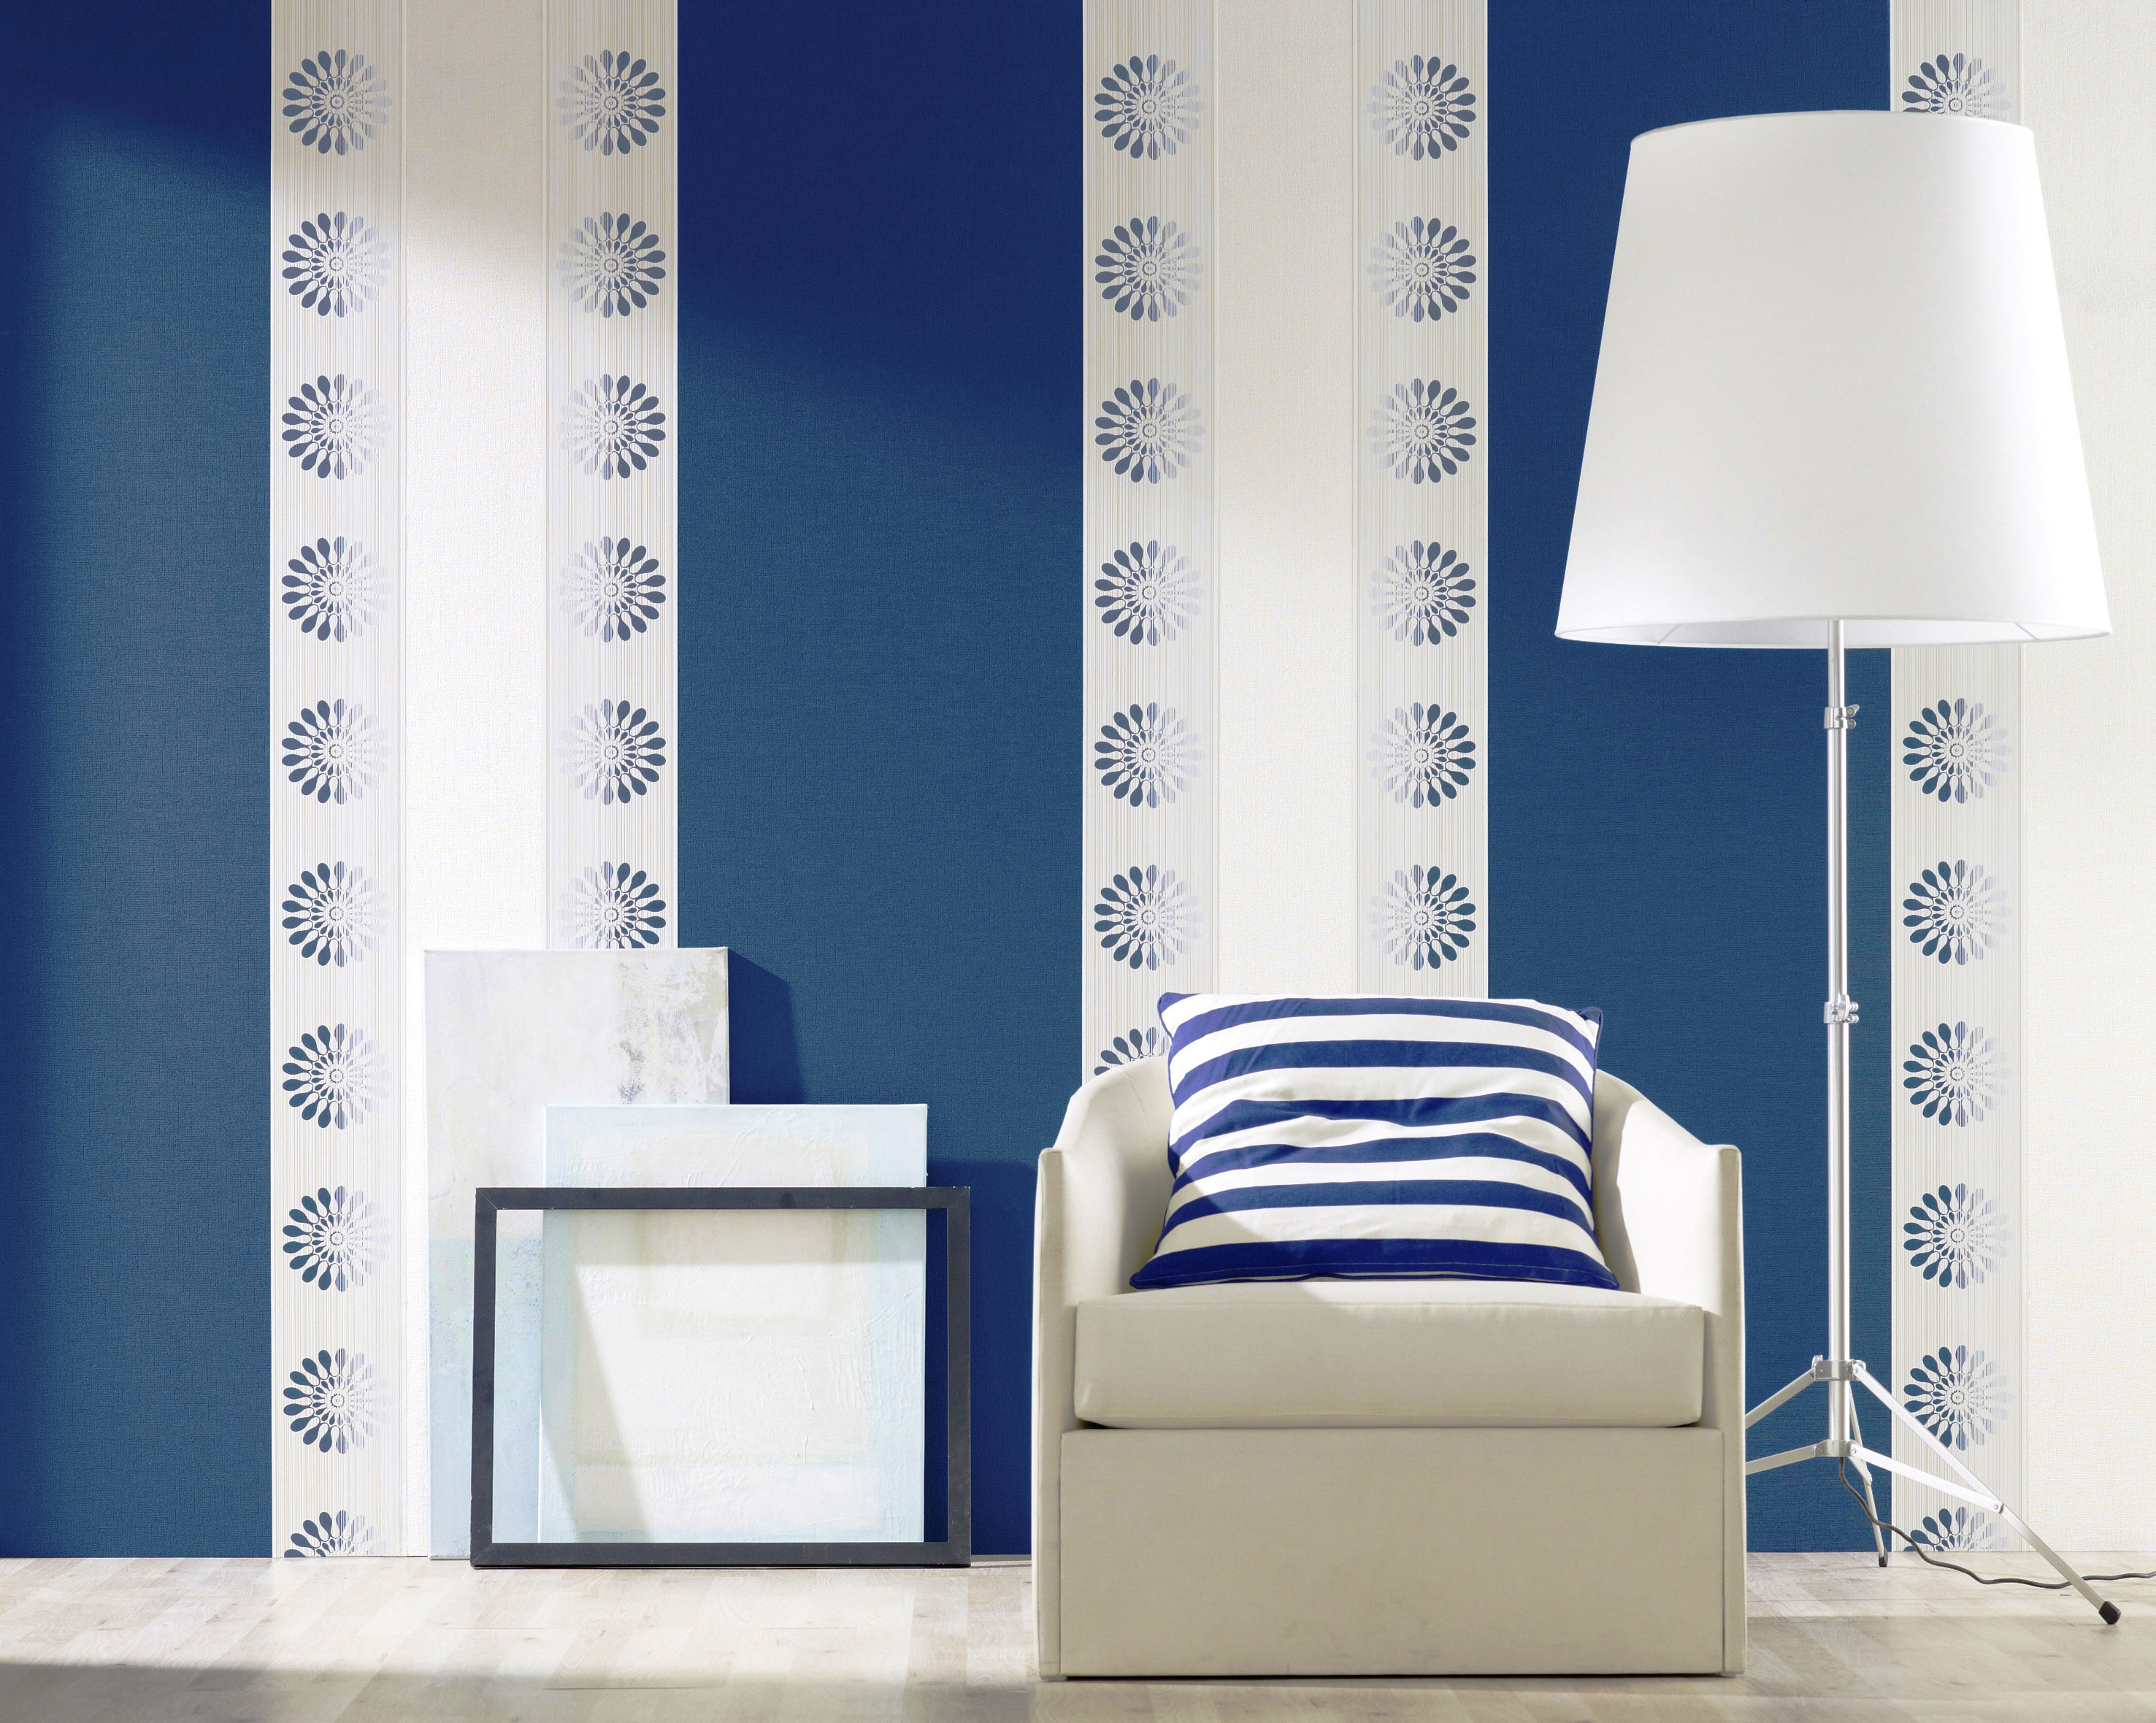 Комбинирование белого цвета и синего создаётся обоями двух видов, тем самых подчёркивает зону для комфортного чтения в спальне